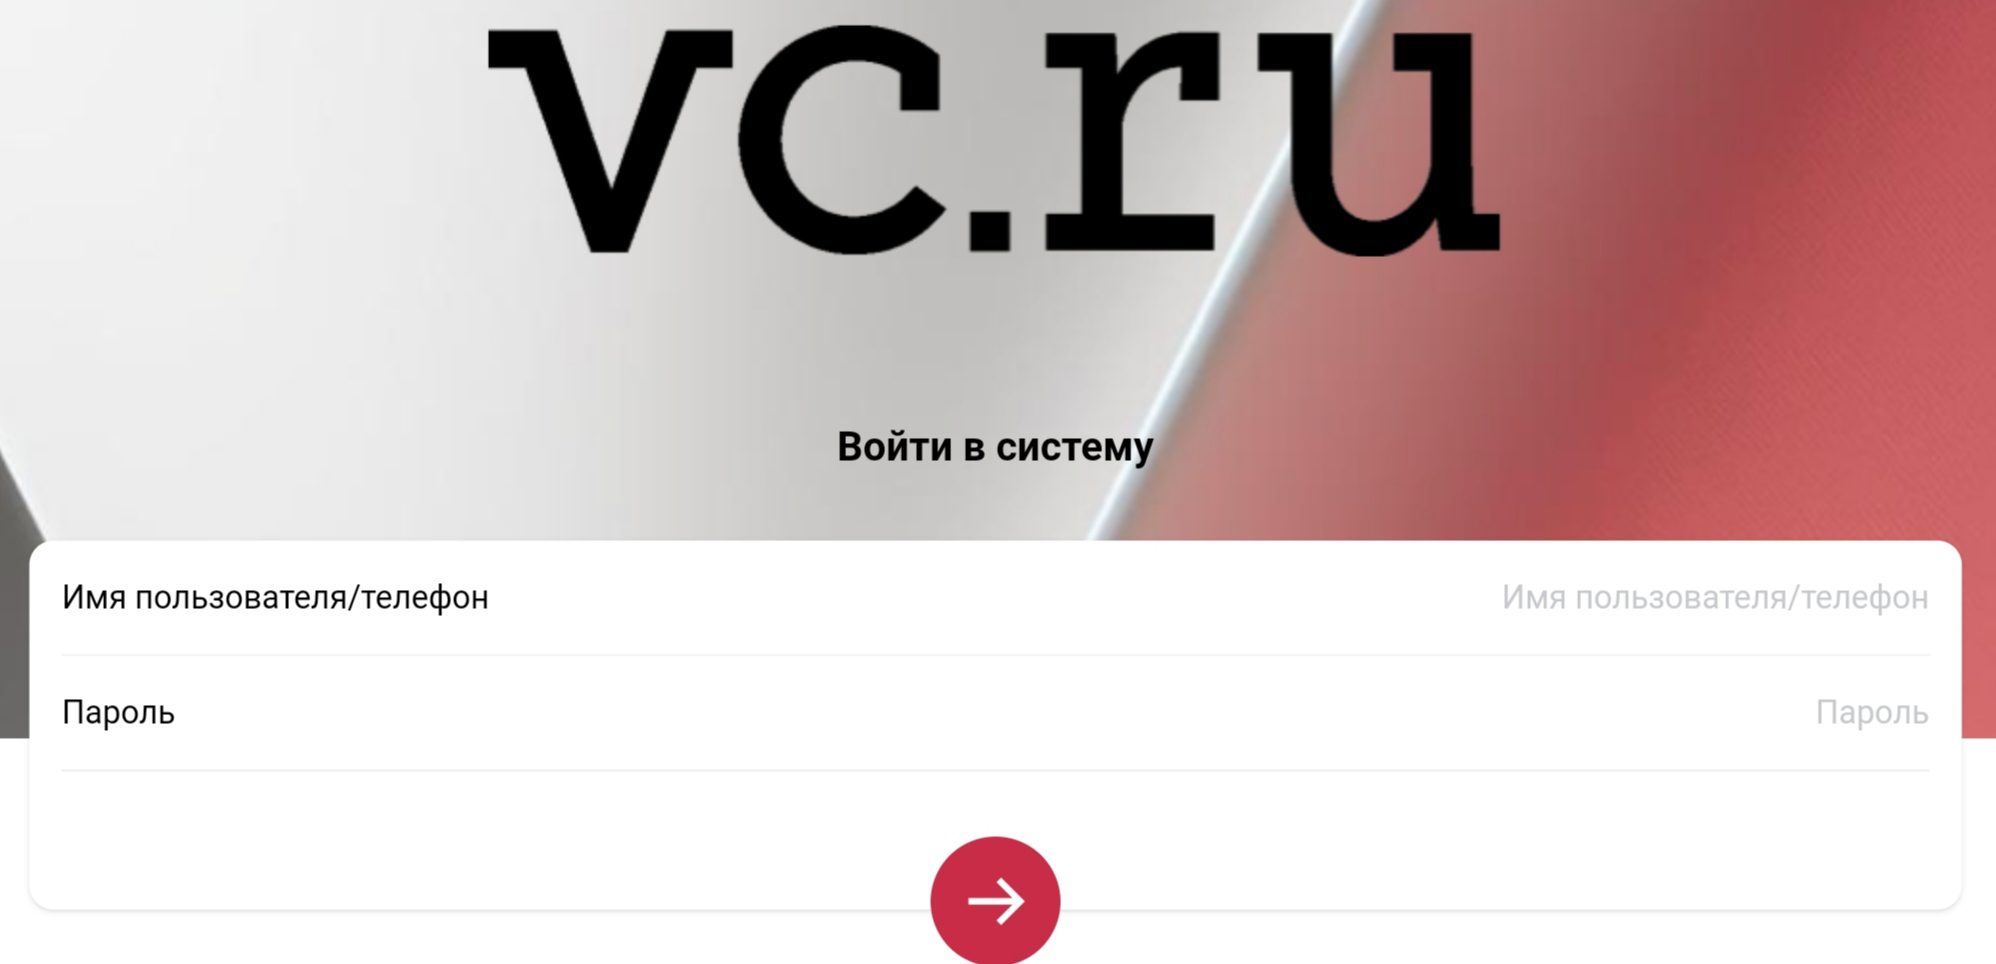 Vc-ruappsa.com сайт